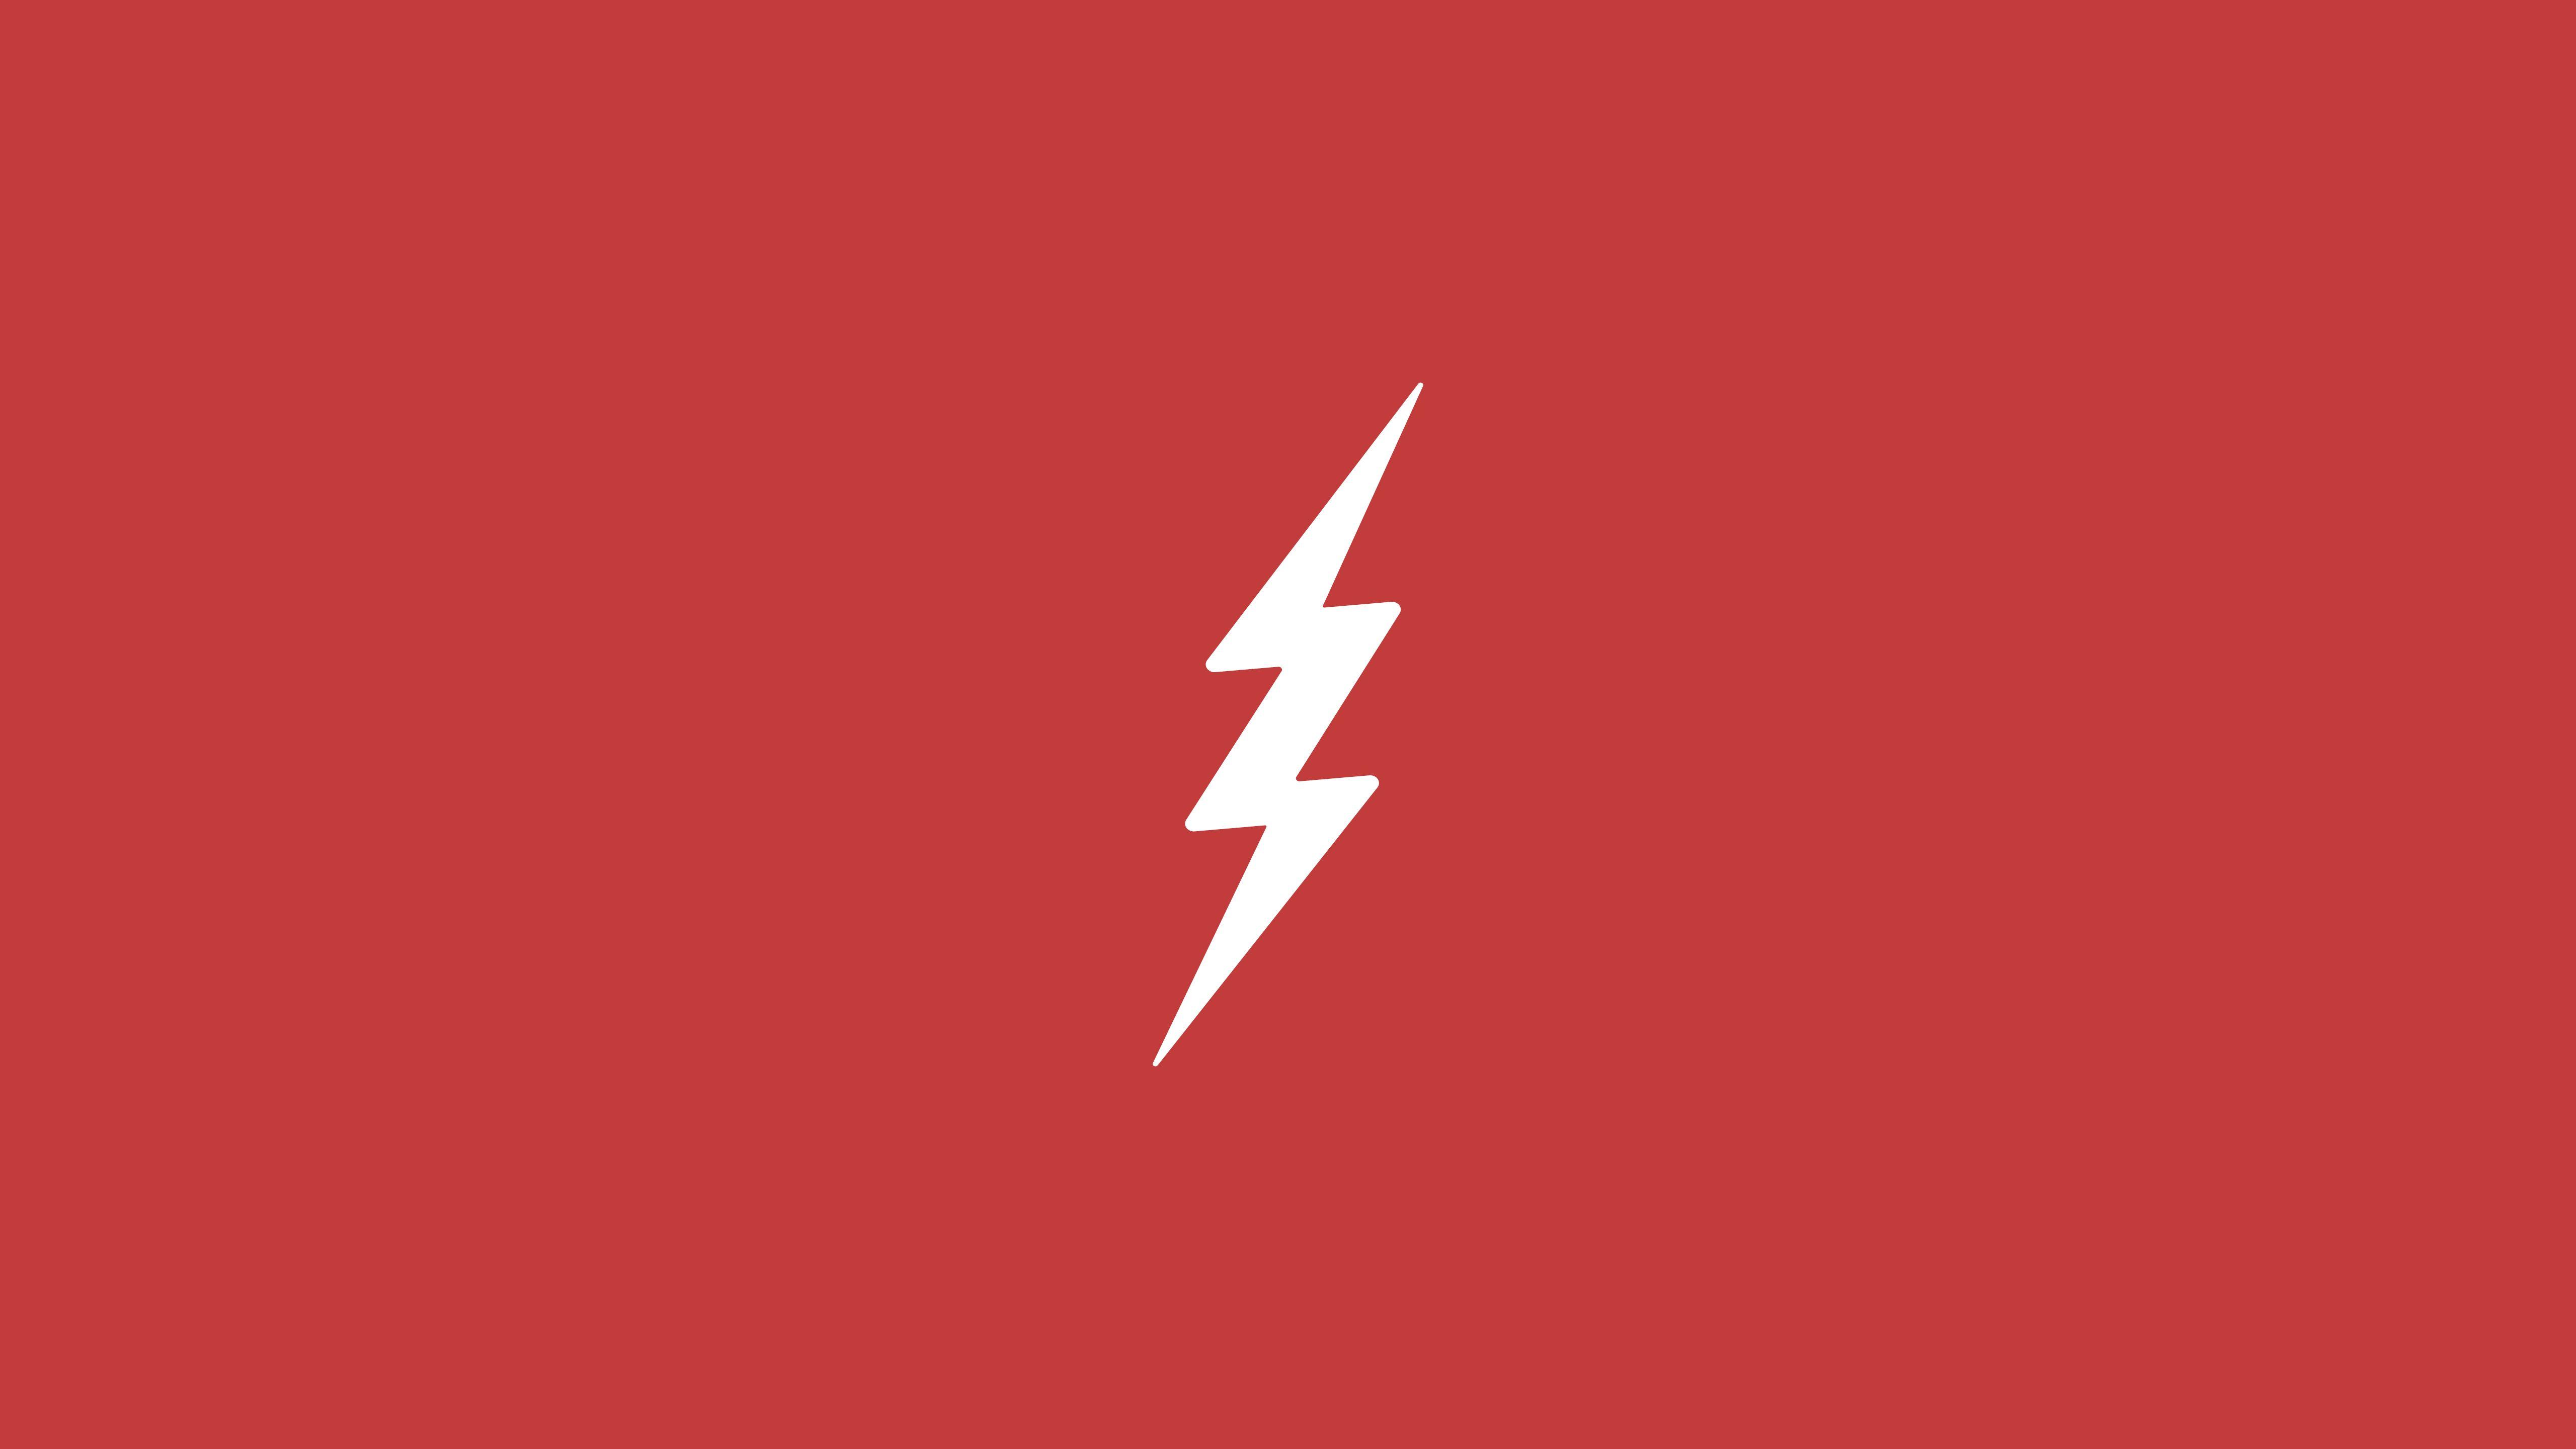 Download Flash Logo Minimalism HD 4k Wallpaper In 2048x1152